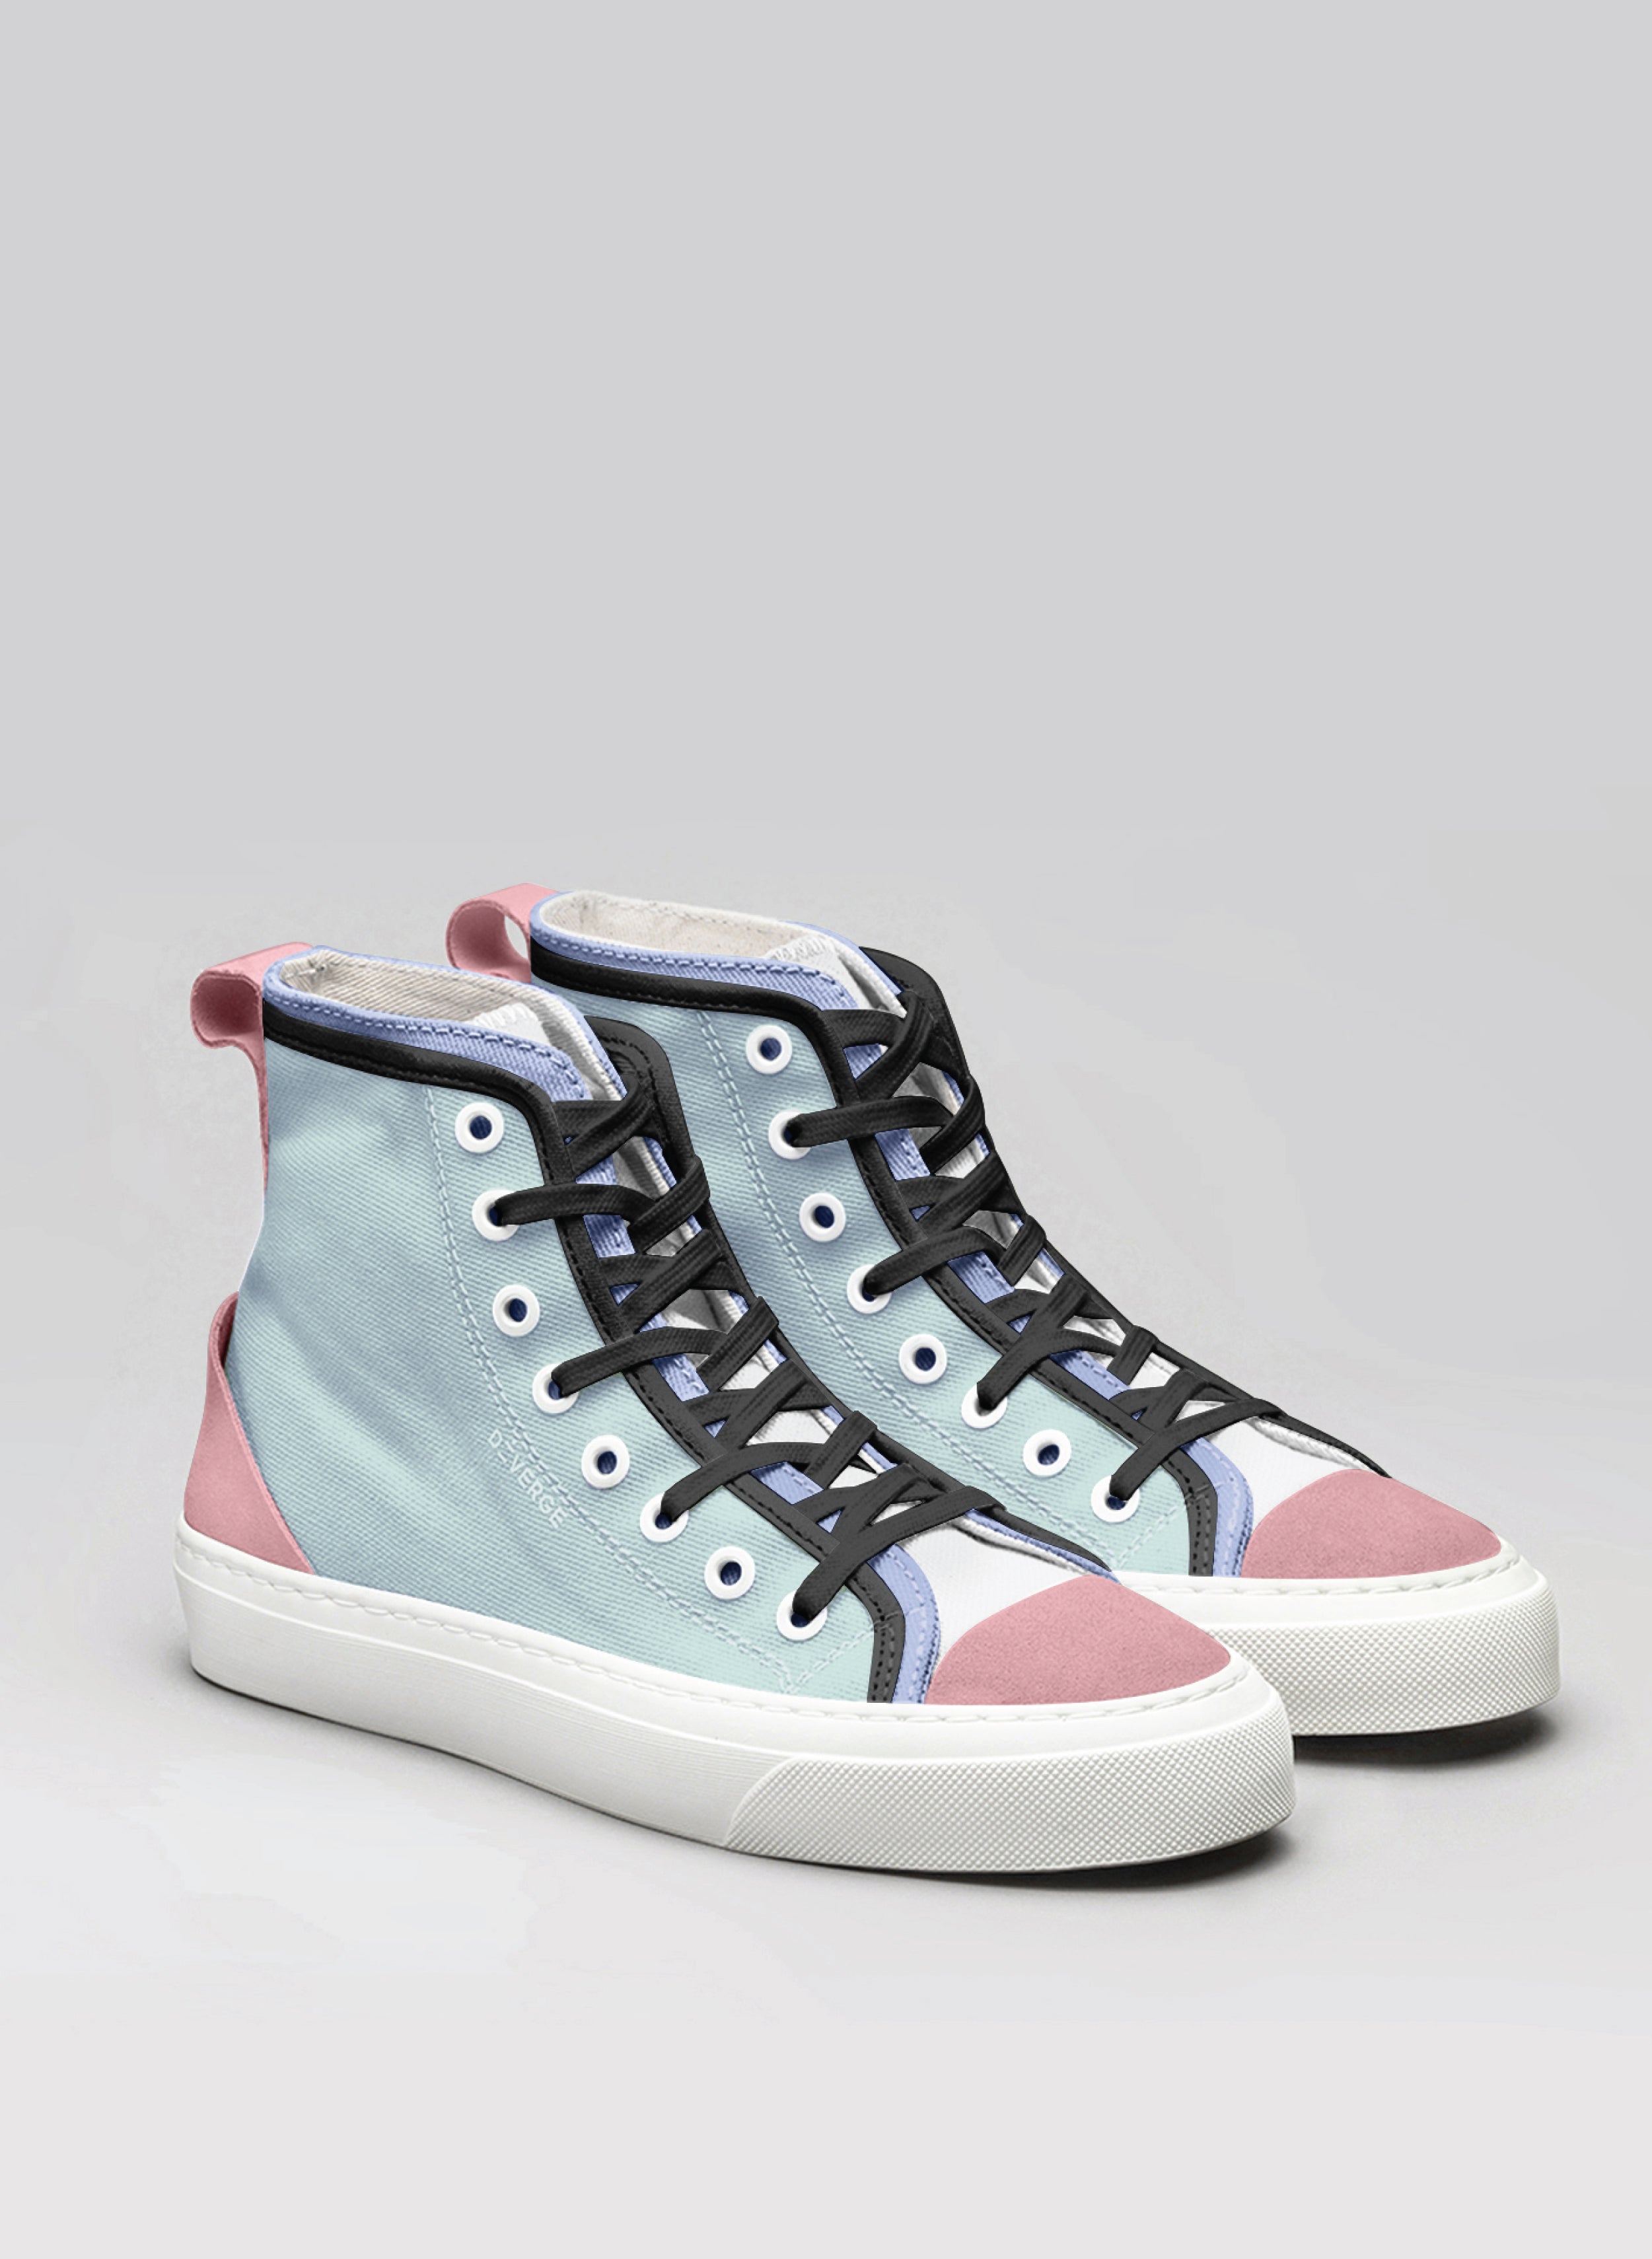 Blaue und rosafarbene High-Top-Modelle sneakers, entworfen von Diverge, mit sozialer Wirkung und individuellem Stil.